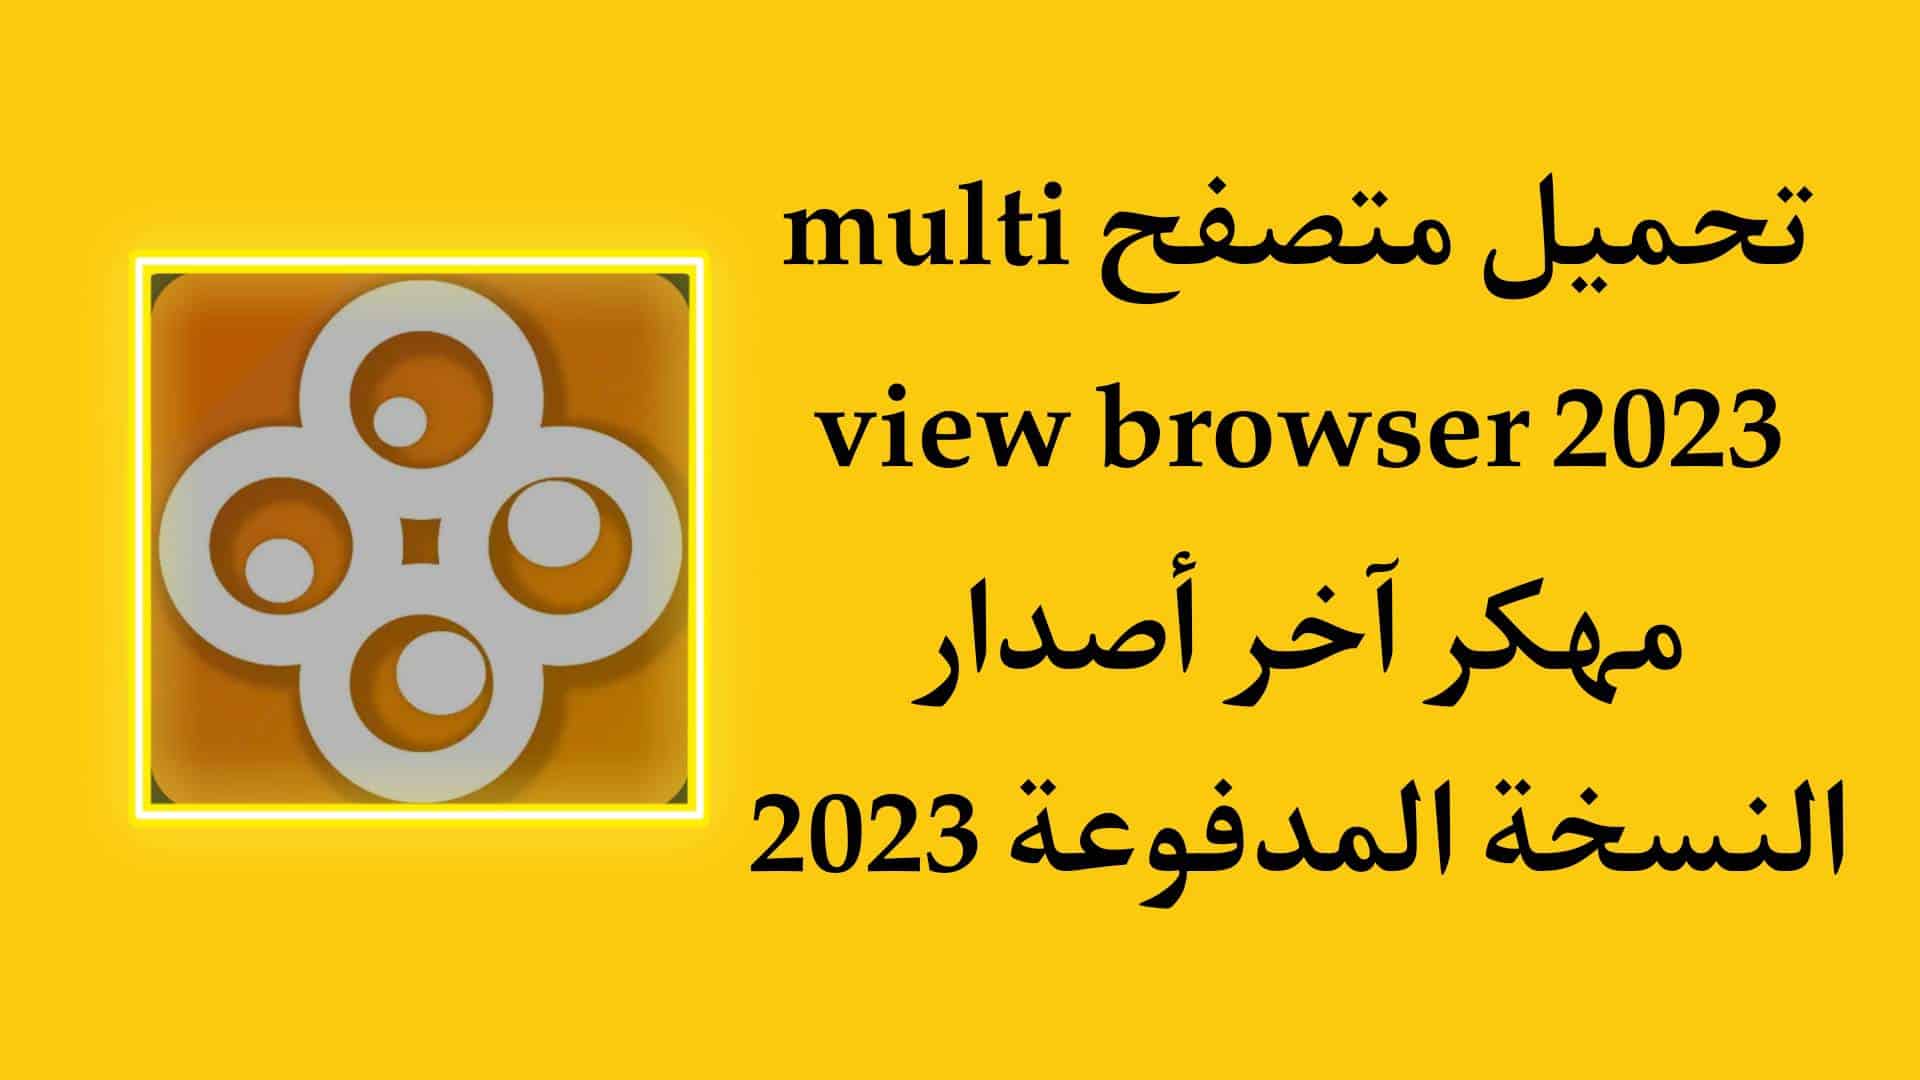 تحميل تطبيق multi view browser 2023 النسخة مجانا